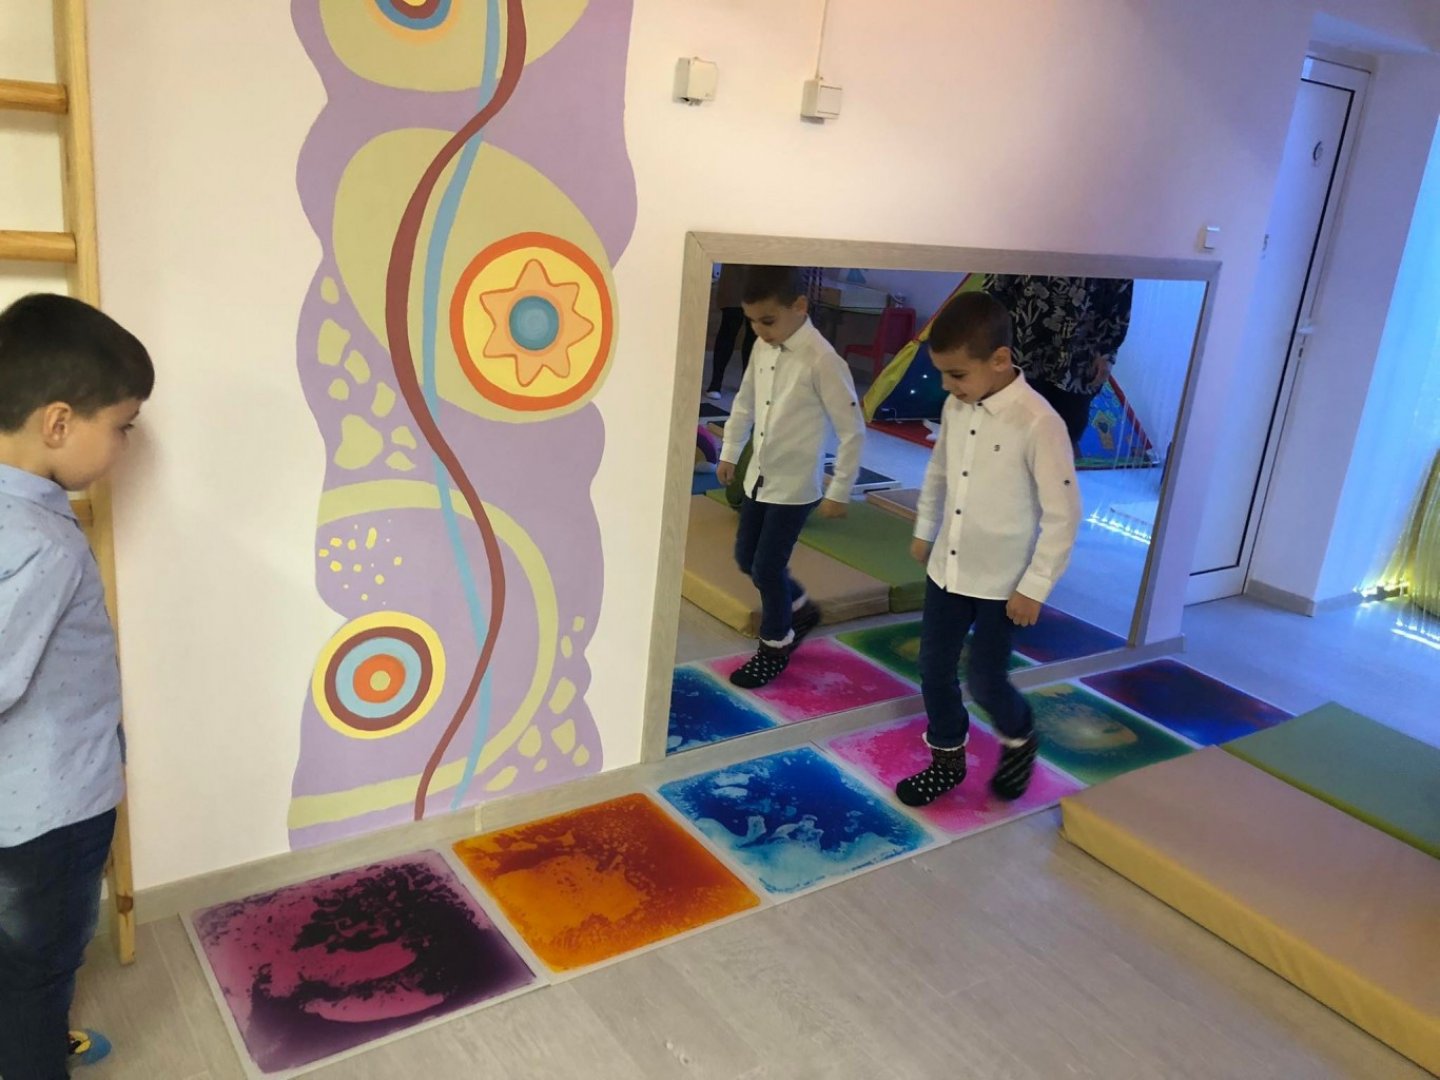 Сензорна стая ще стимулира развитието на дечица със специални нужди в бургаската детска градина ”З - E-Burgas.com